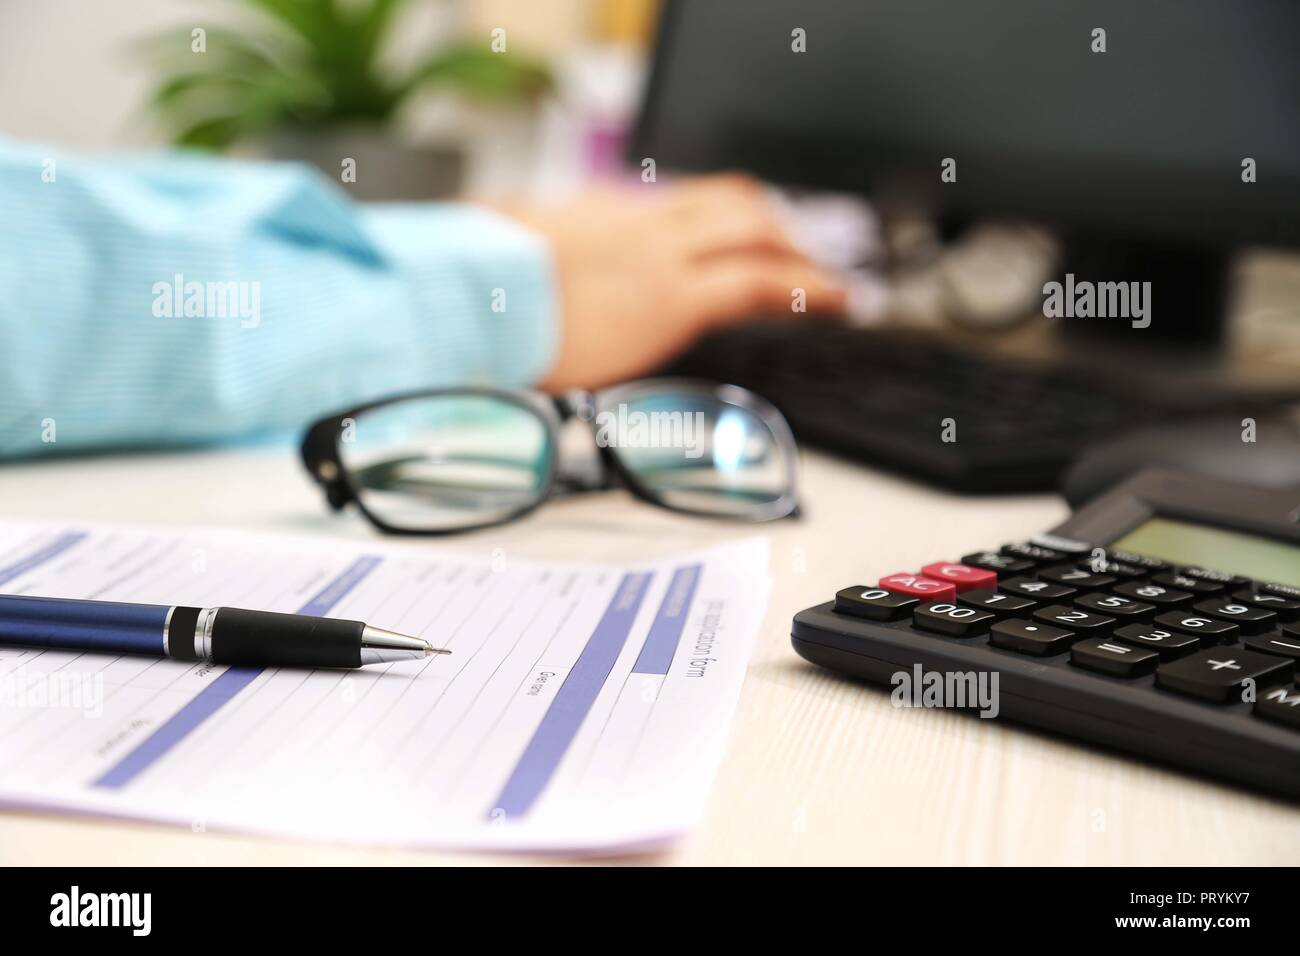 Photo de l'homme est de taper au clavier. Photo du formulaire de demande, un stylo, calculatrice et lunettes. Banque D'Images